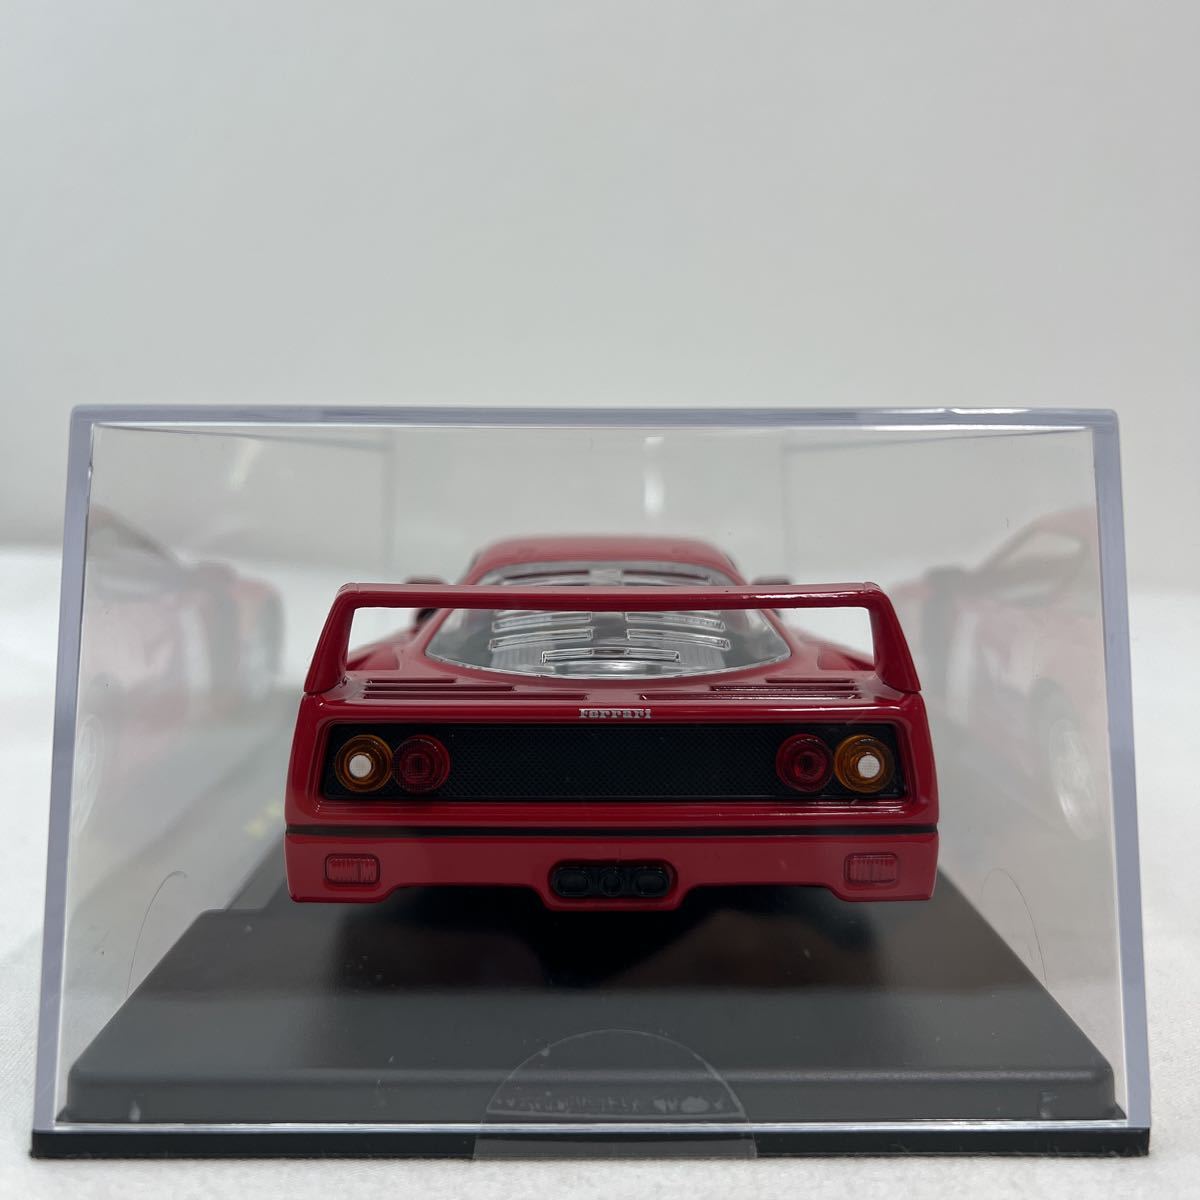  der Goss чай nire* grande .* Ferrari коллекция 1/24 FERRARI F40 1987 год Red BBurago конечный продукт миникар модель машина 